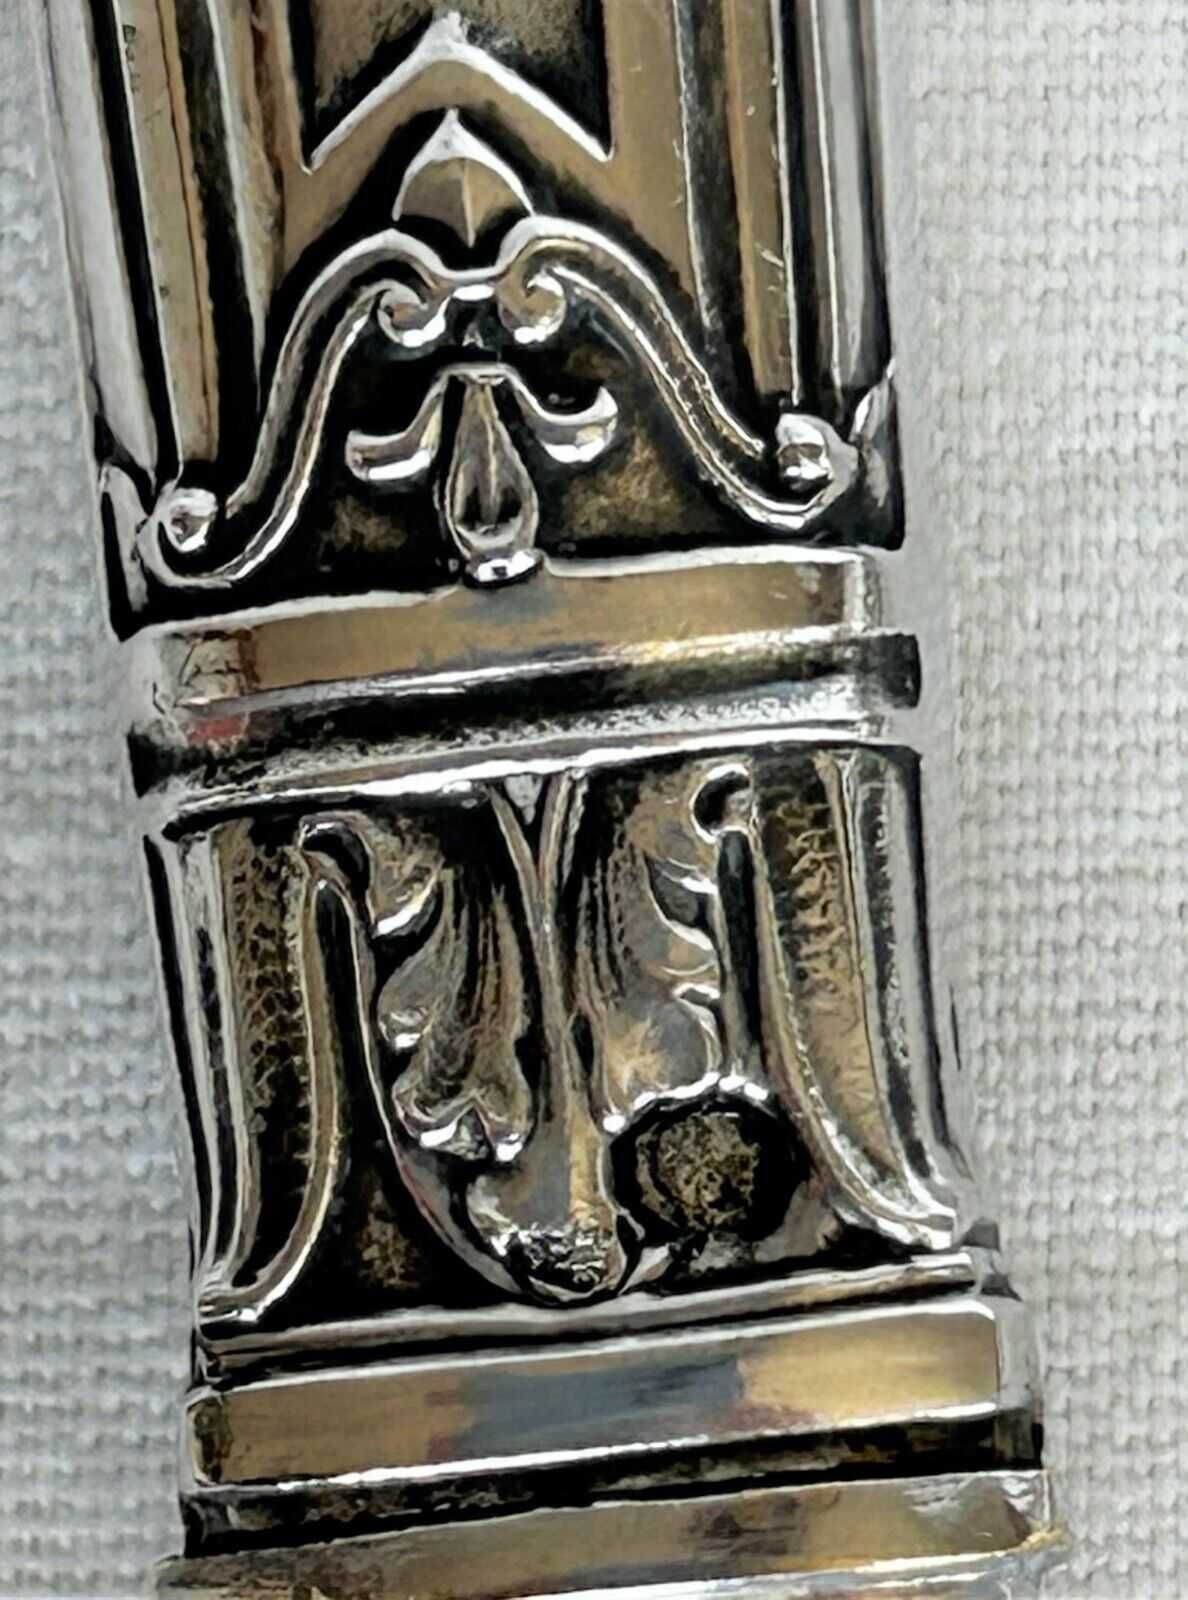 Pereche de linguri de servire Napoleon I argint masiv Minerva